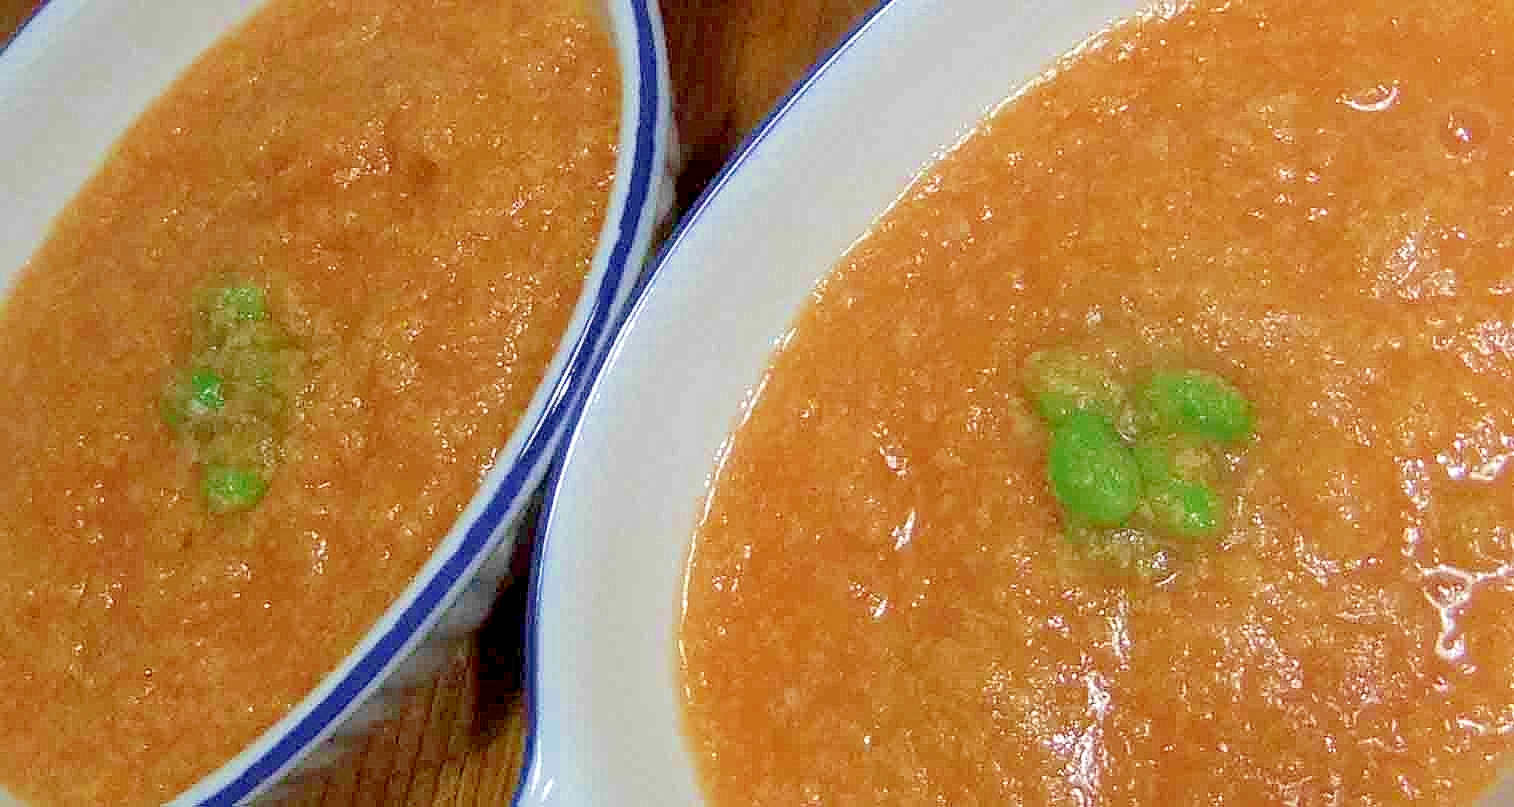 にんじんと豆乳のオレンジ色のスープ